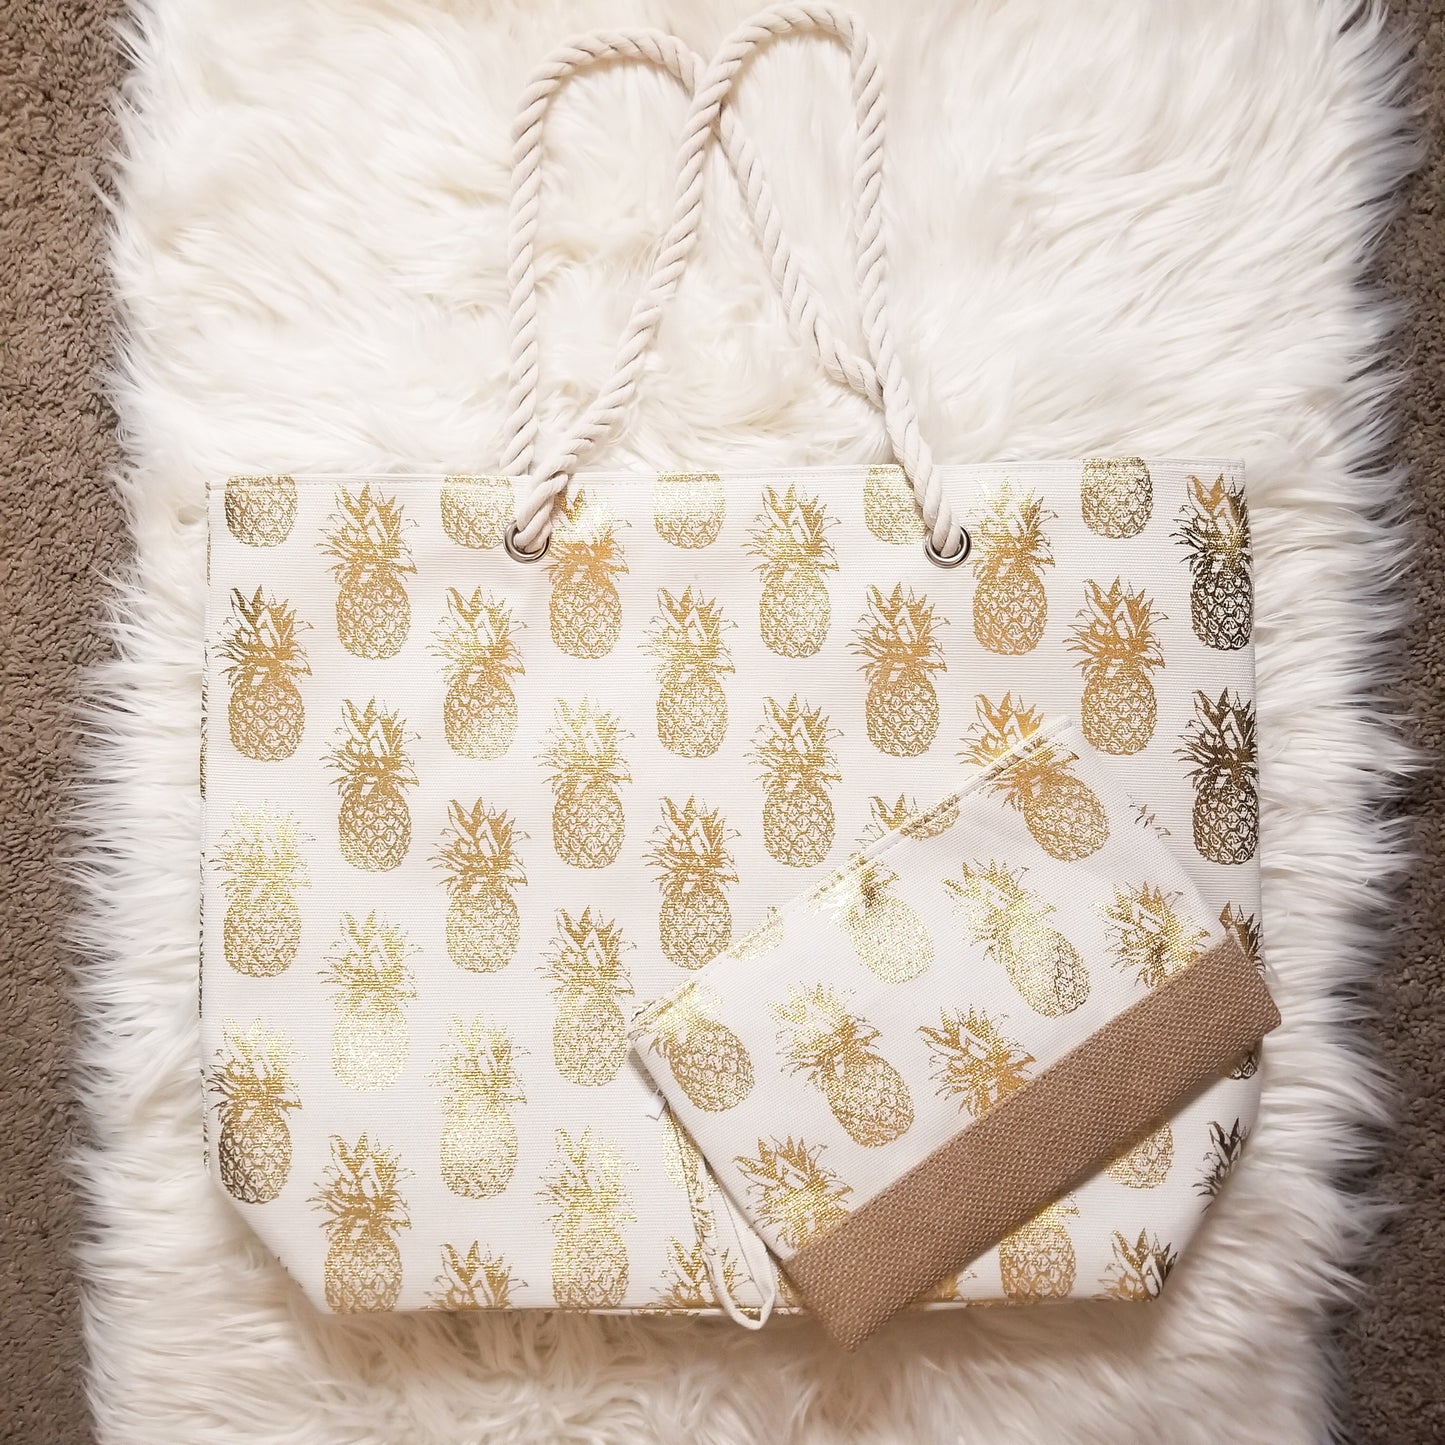 Pineapple Tote Bag - White